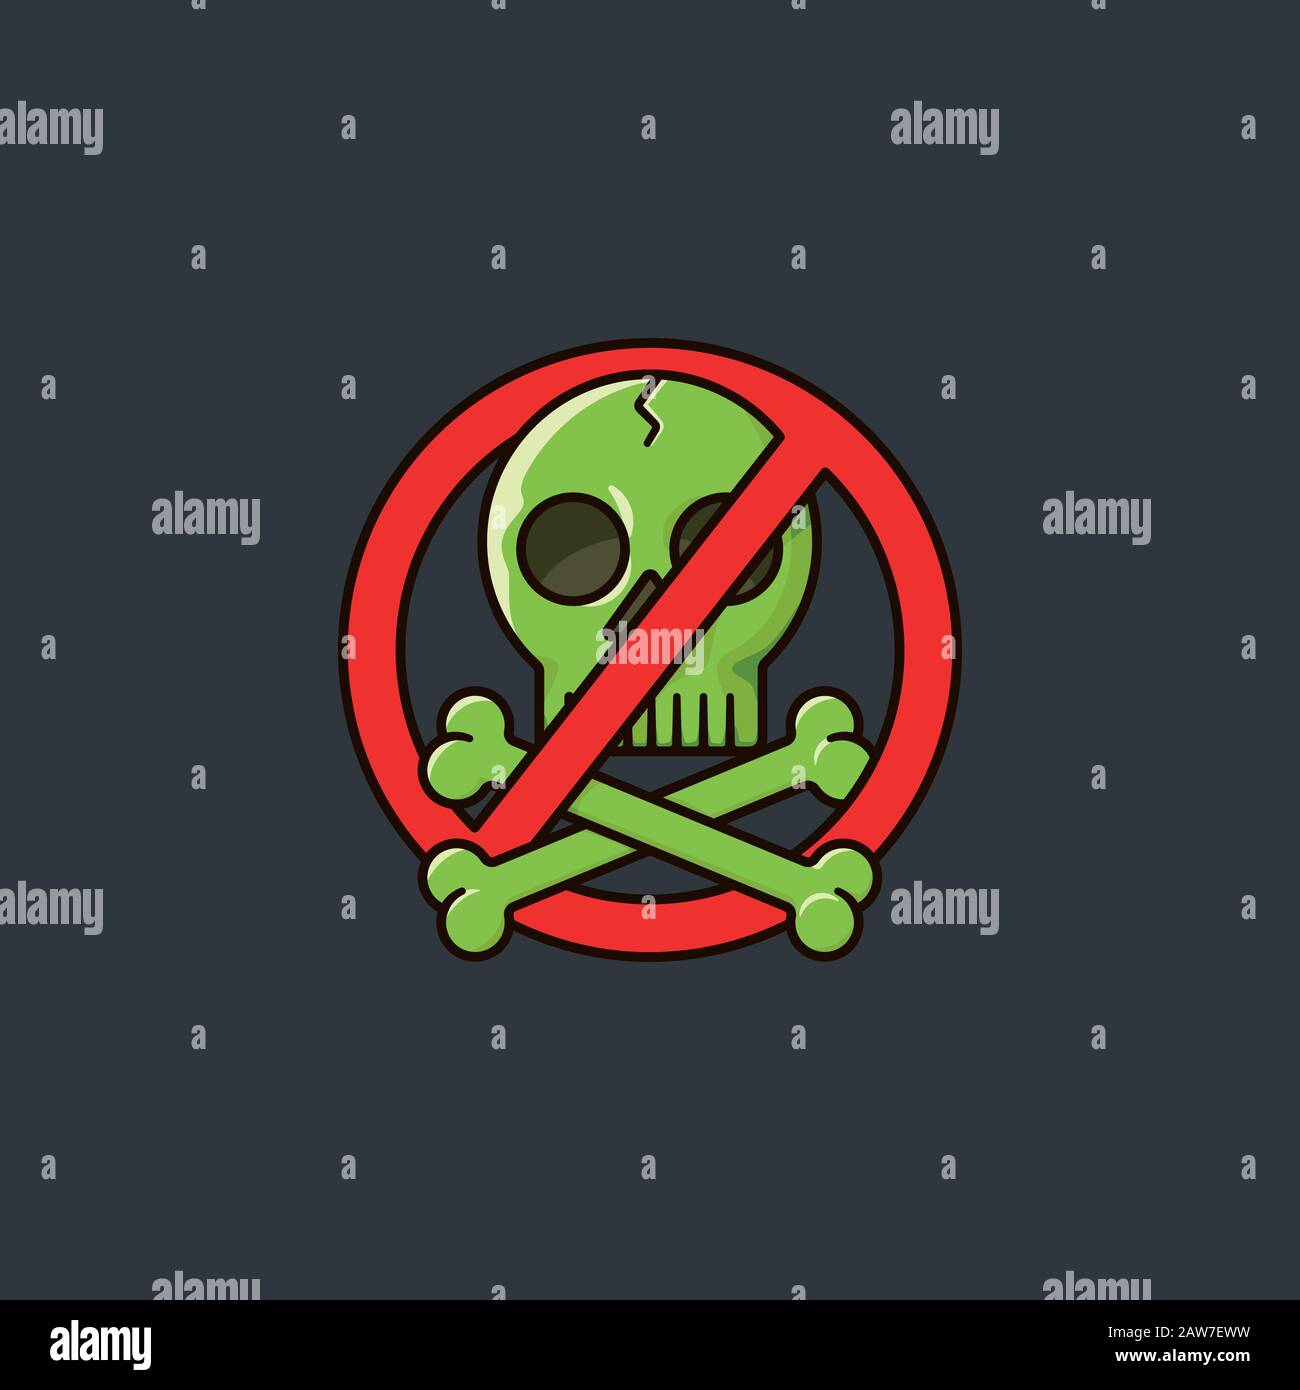 Illustration vectorielle de couleur de symbole anti-piratage avec crâne et os croisés entrelacés avec signe interdit.illustration. Illustration de Vecteur